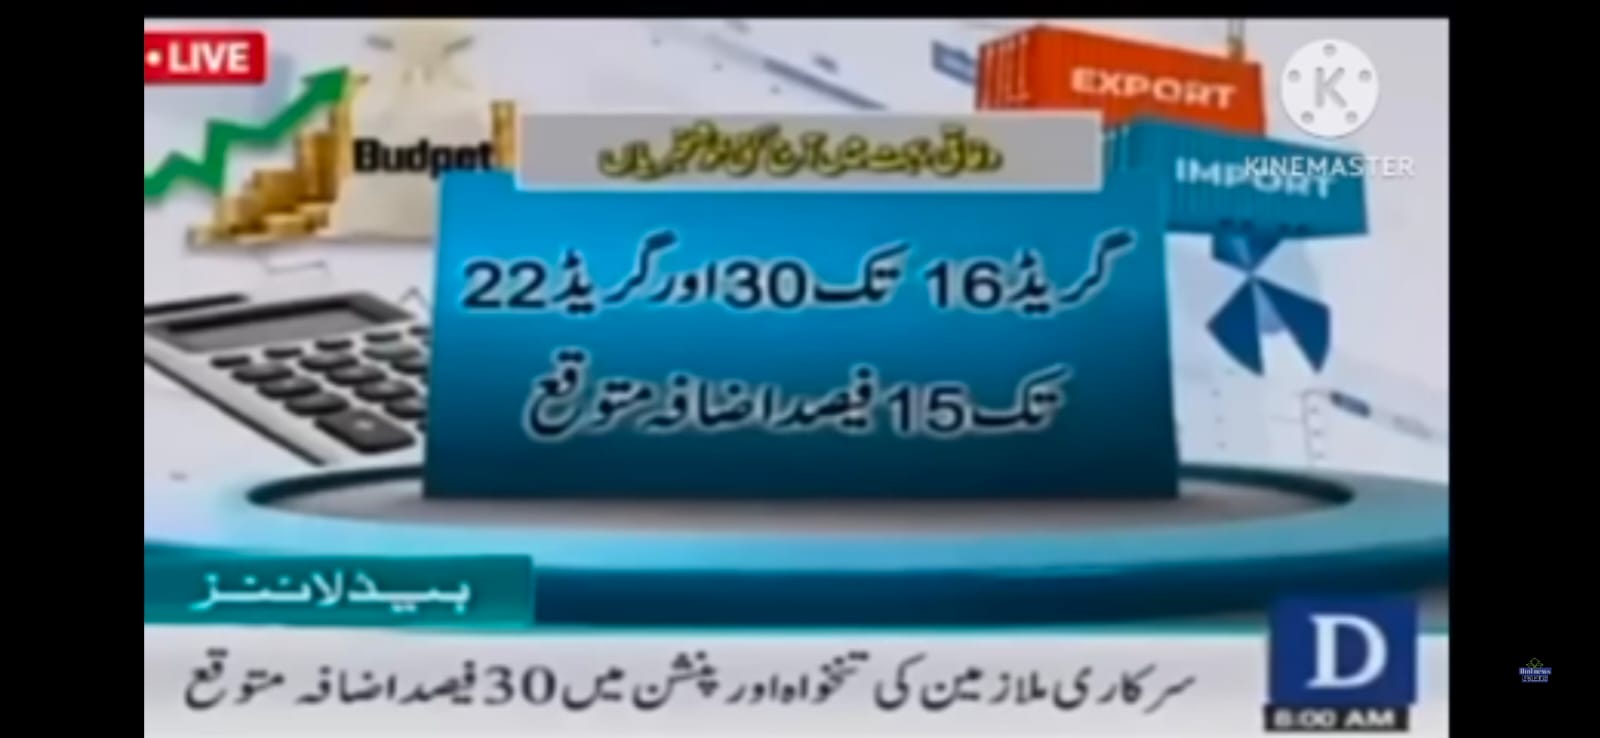 Dawn News Channel Salary